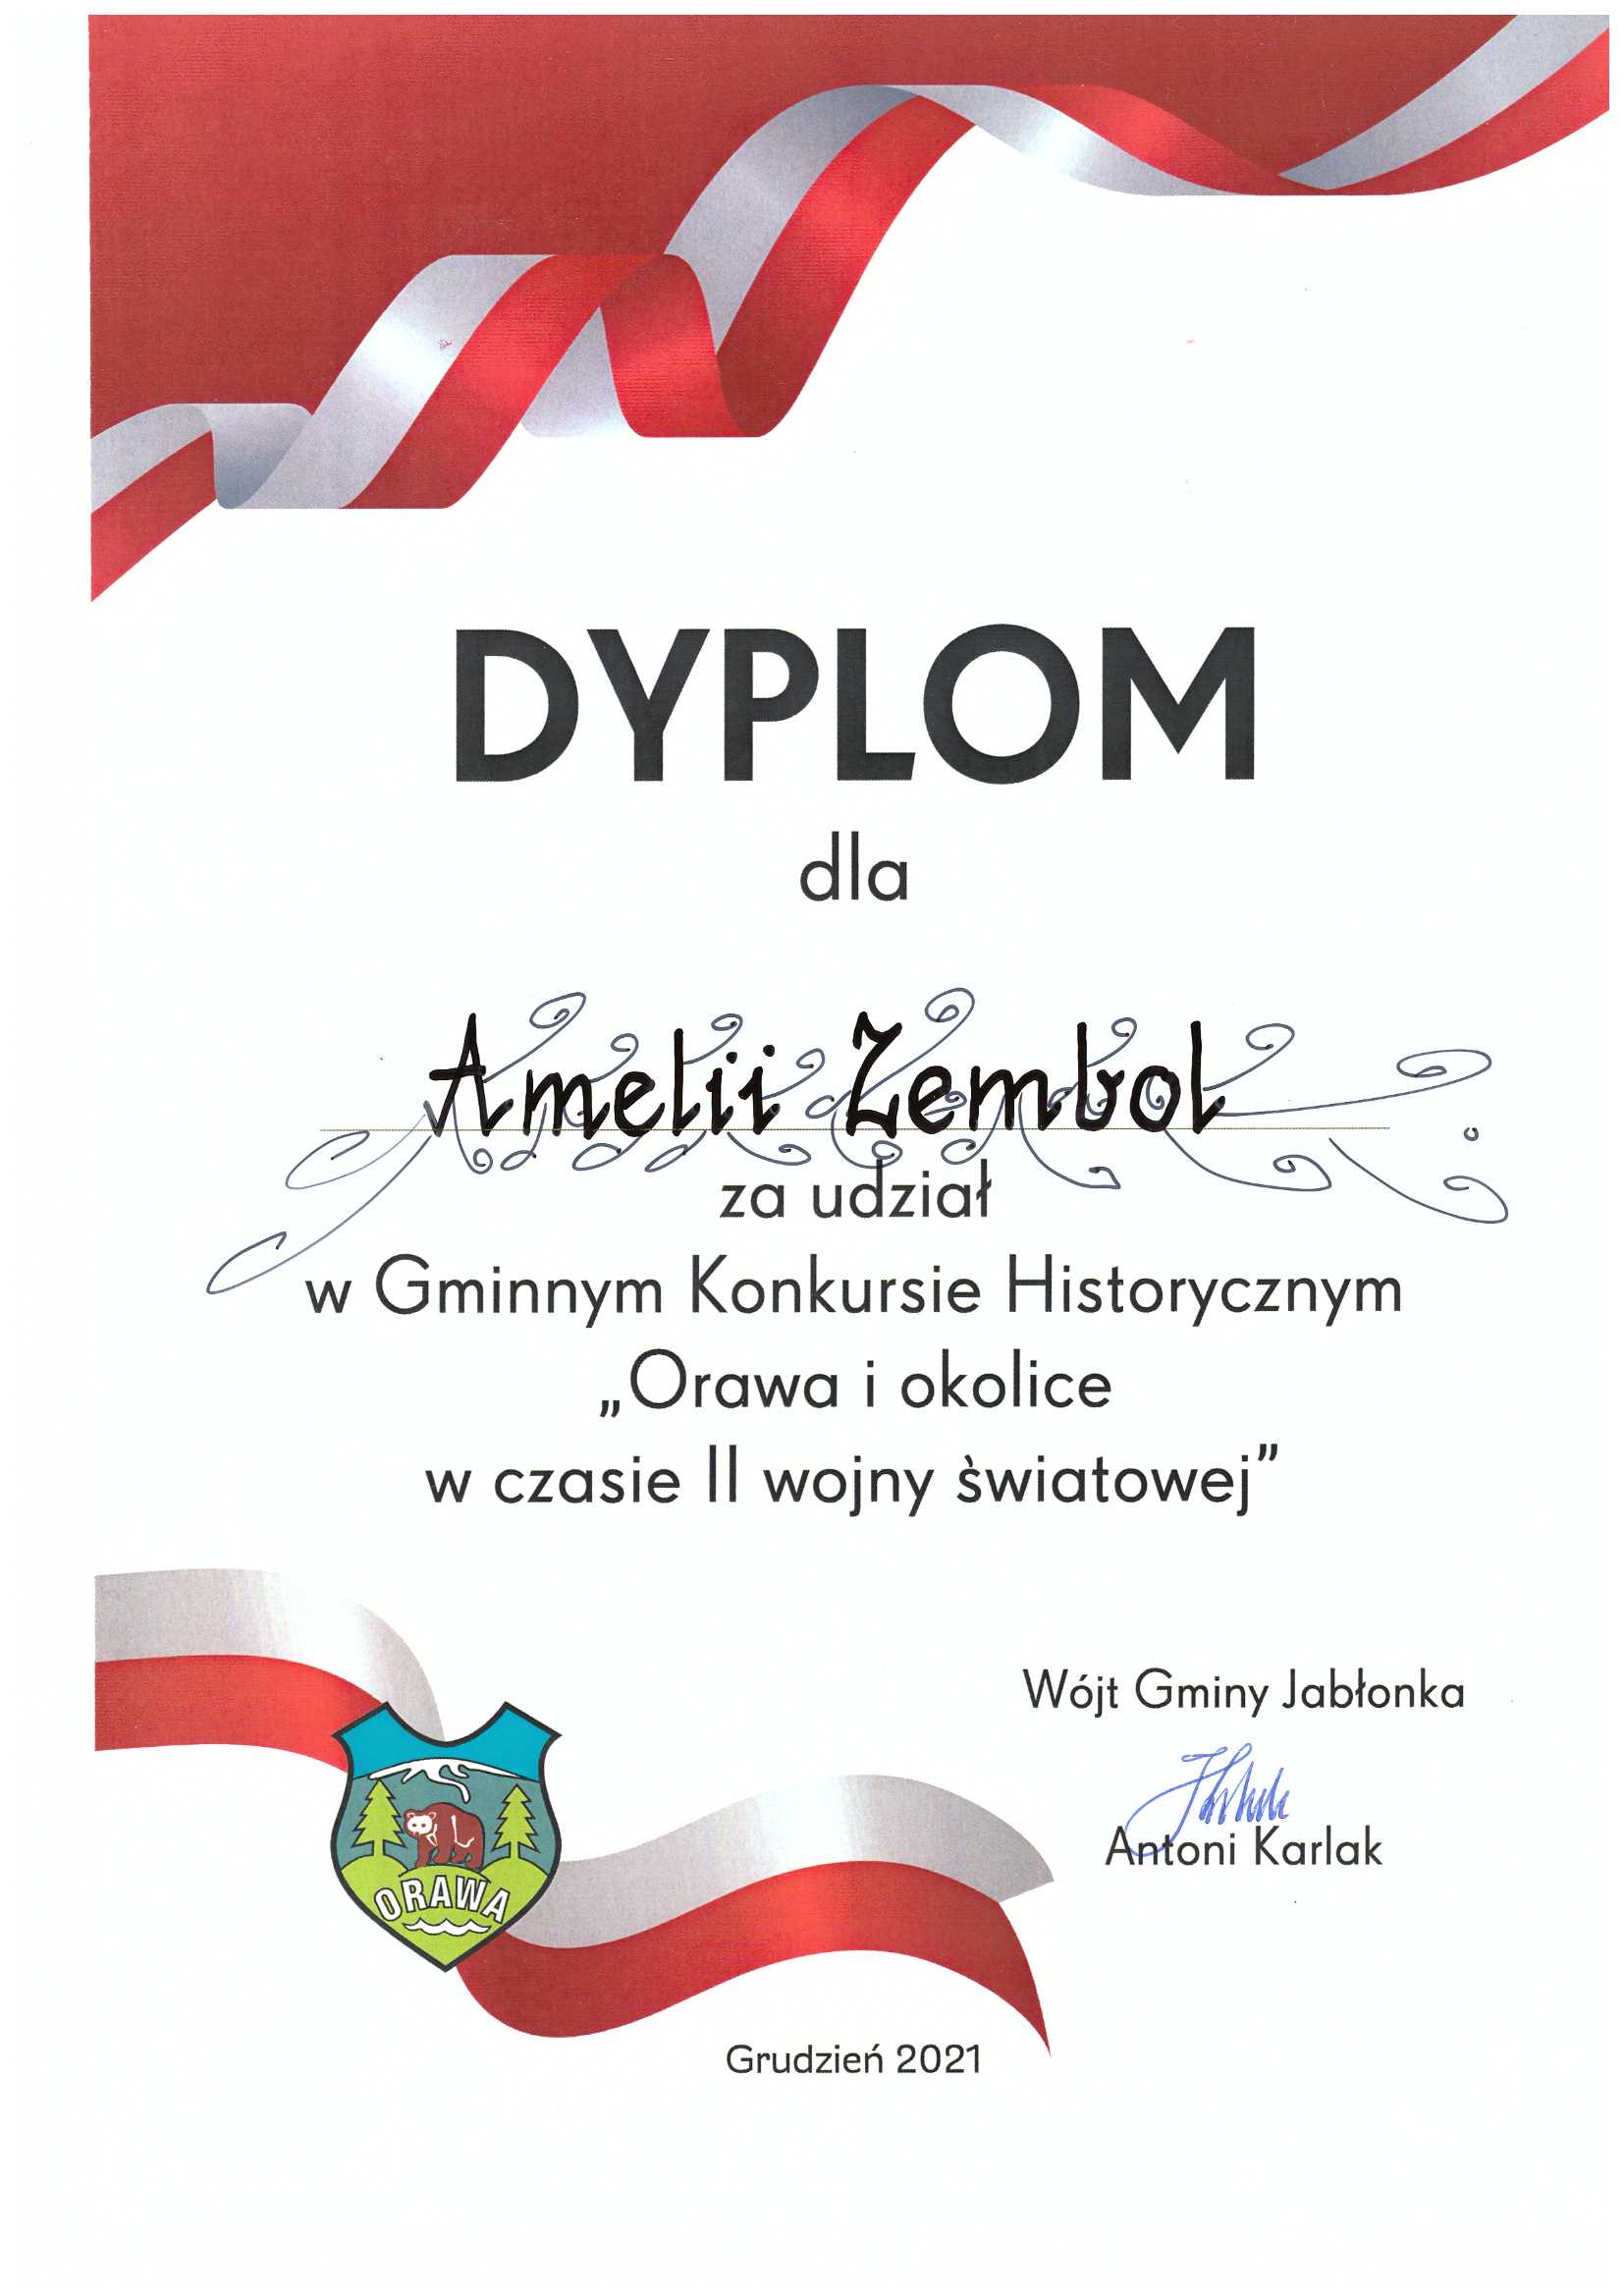 Dyplom dla Amelii Zembol za udział w Gminnym Konkursie Historycznym "Orawa i okolice w czasie II wojny światowej"